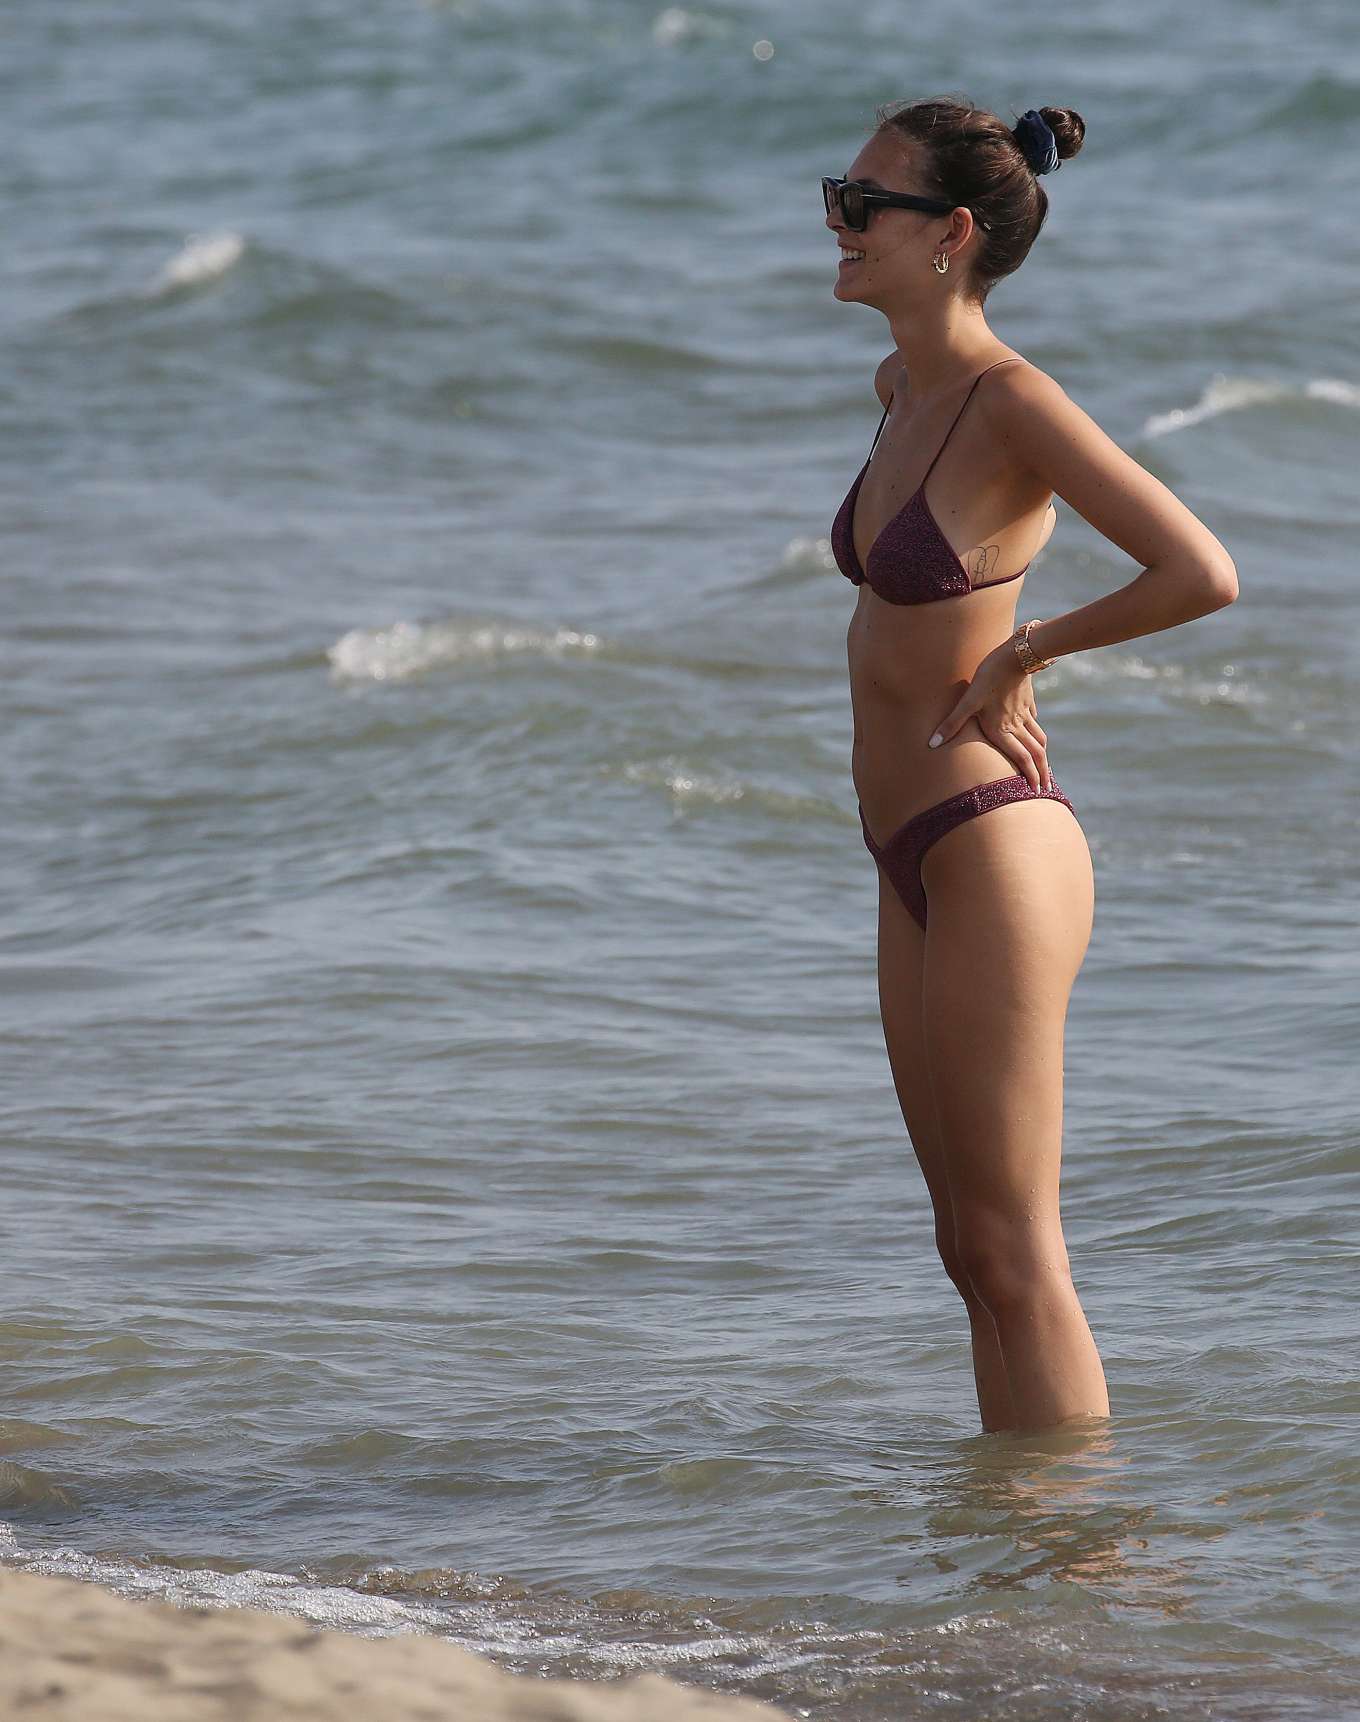 Vittoria Ceretti in Bikini on the beach in Forte dei Marmi. 